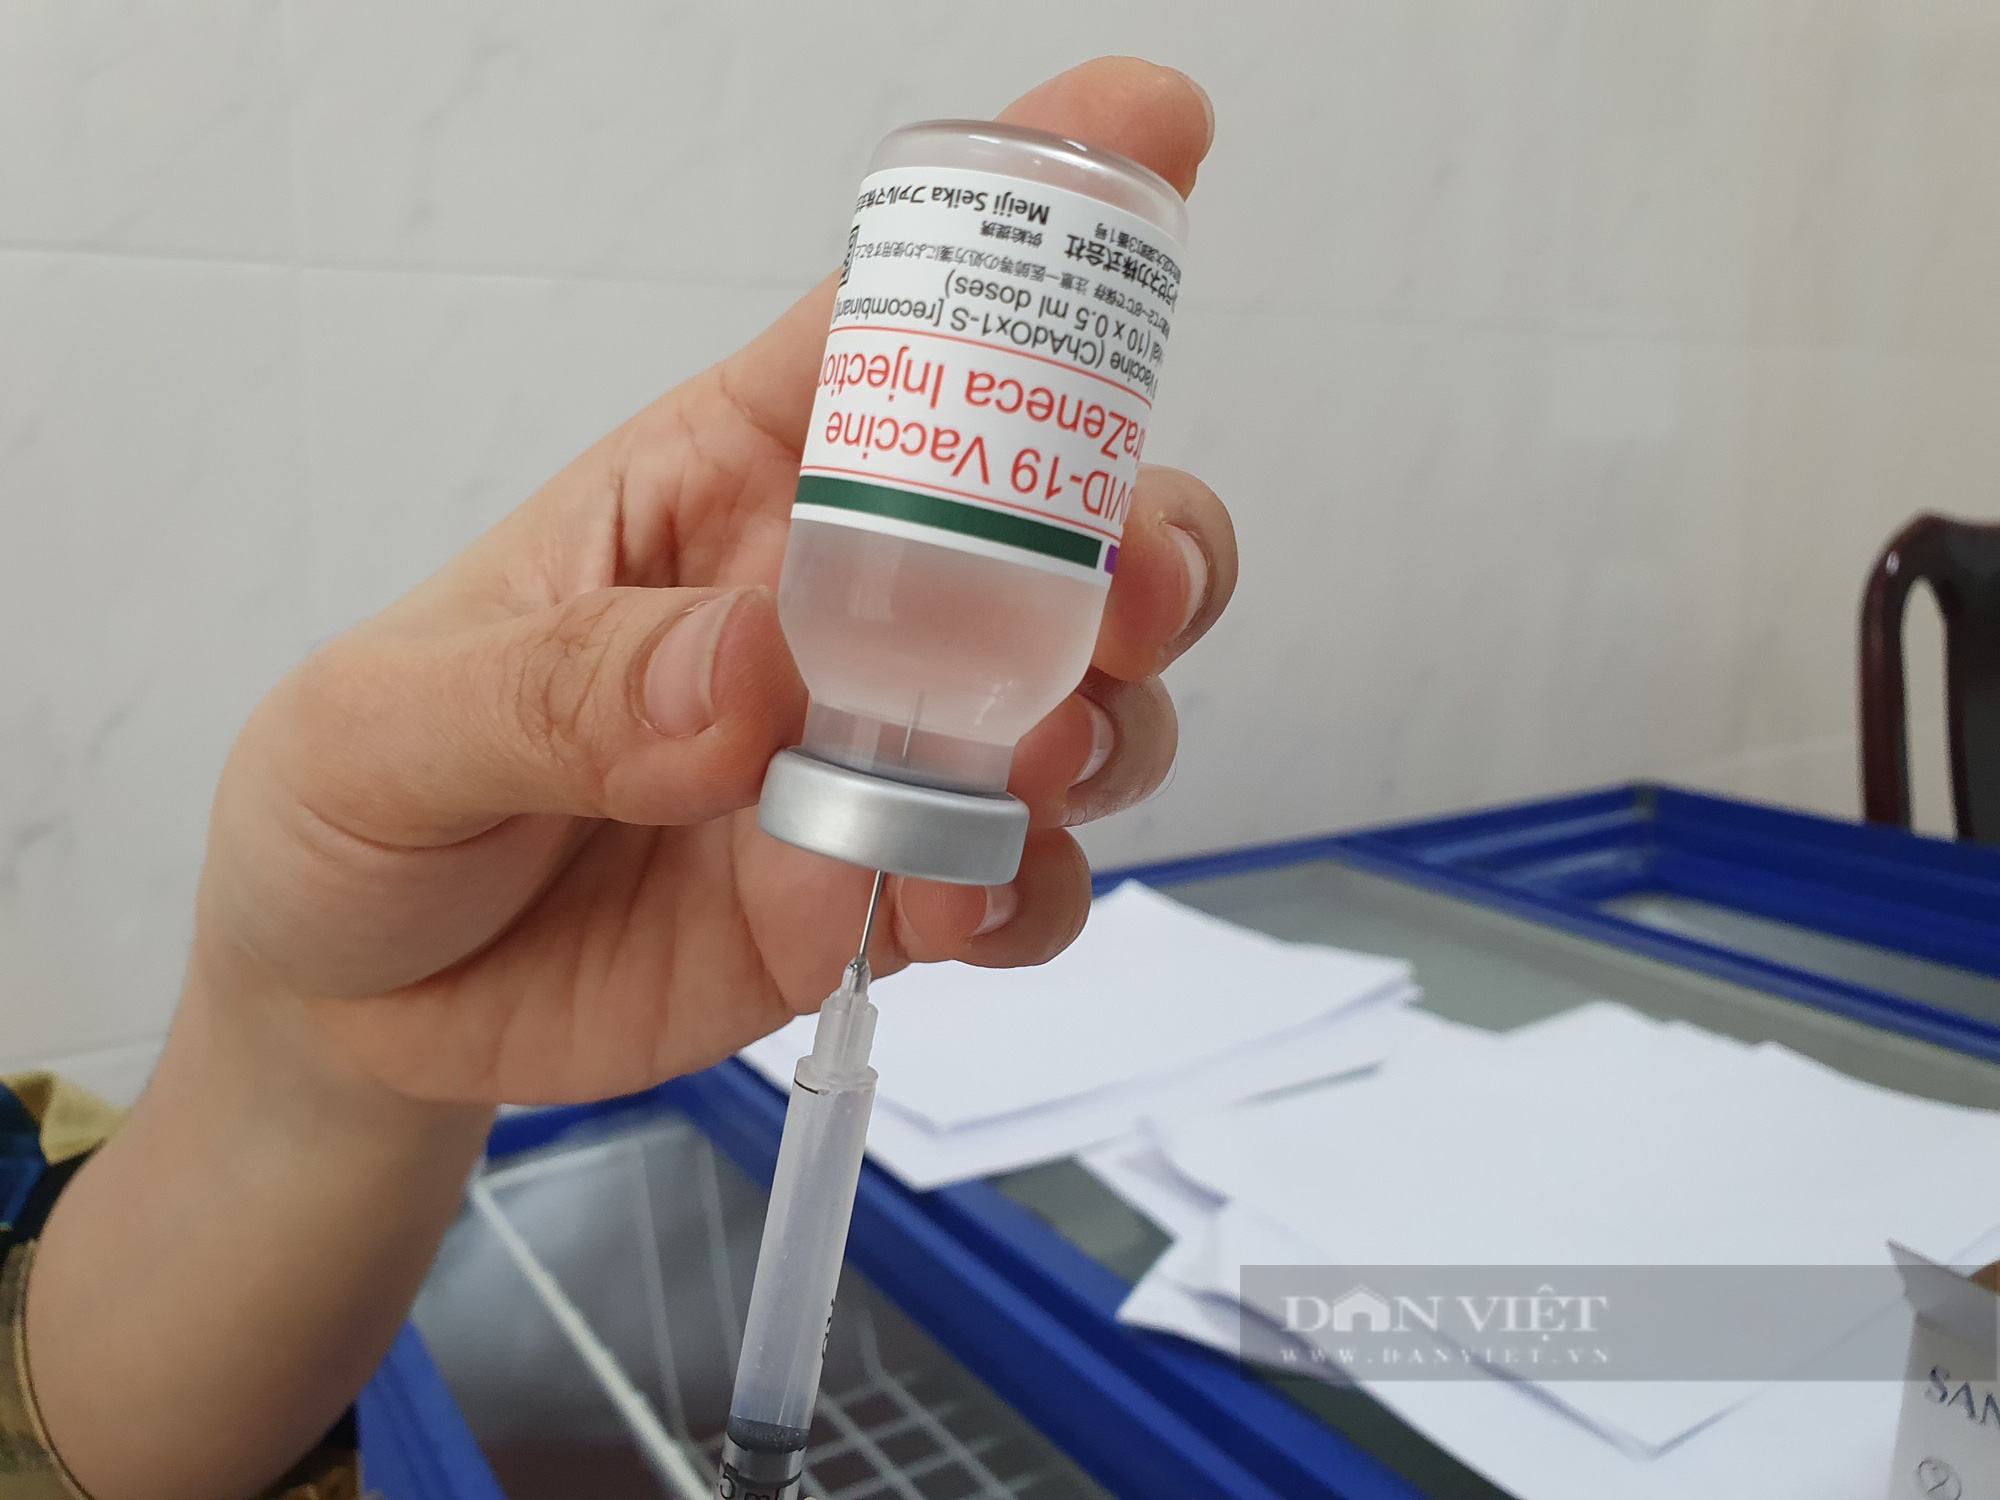 Bà Rịa – Vũng Tàu: Nguồn vaccine Covid-19 đủ tiêm chủng miễn phí cho 70% người dân - Ảnh 1.